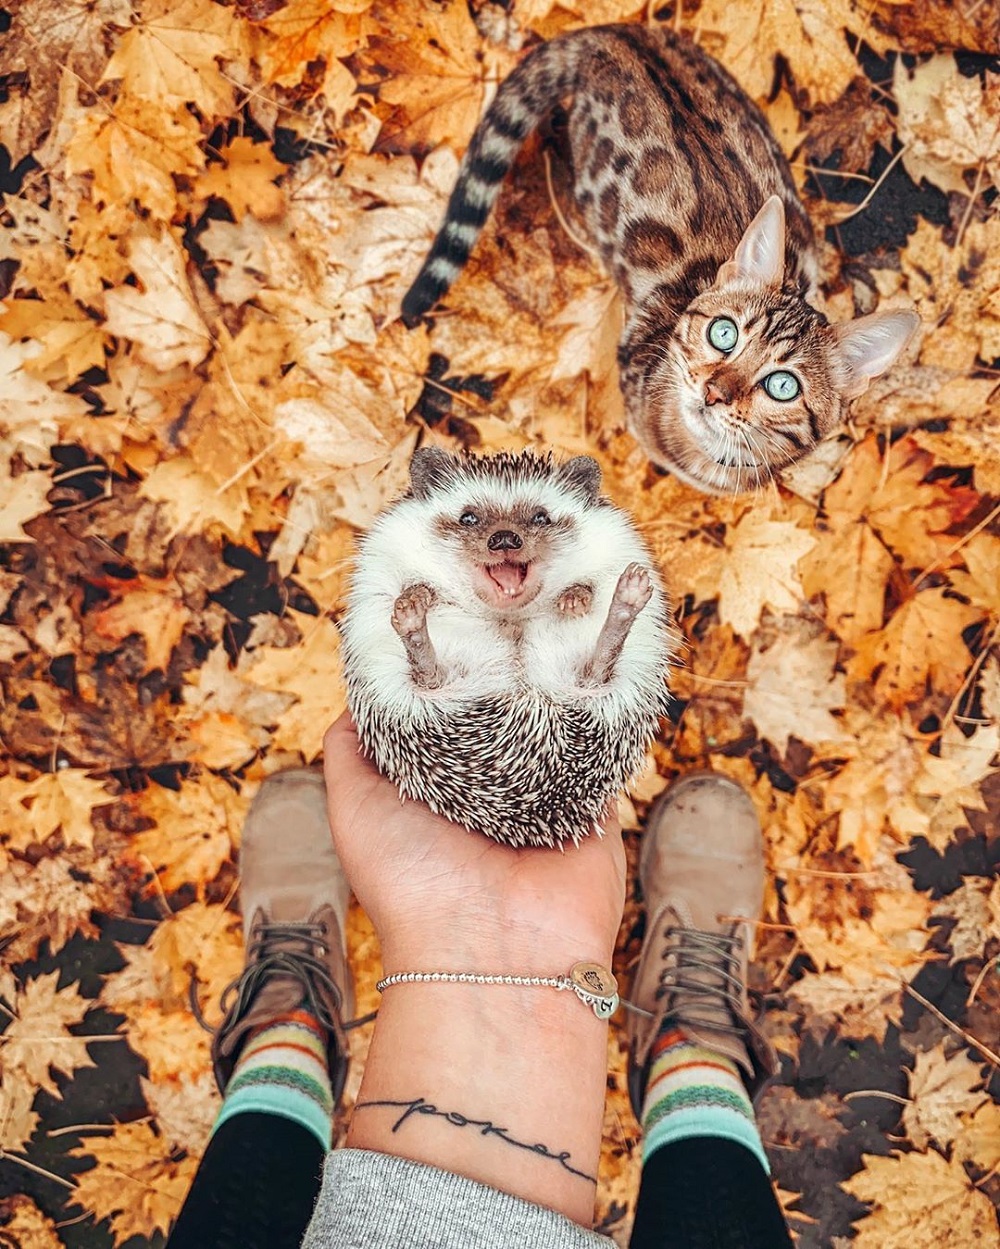 Hedgehog and cat